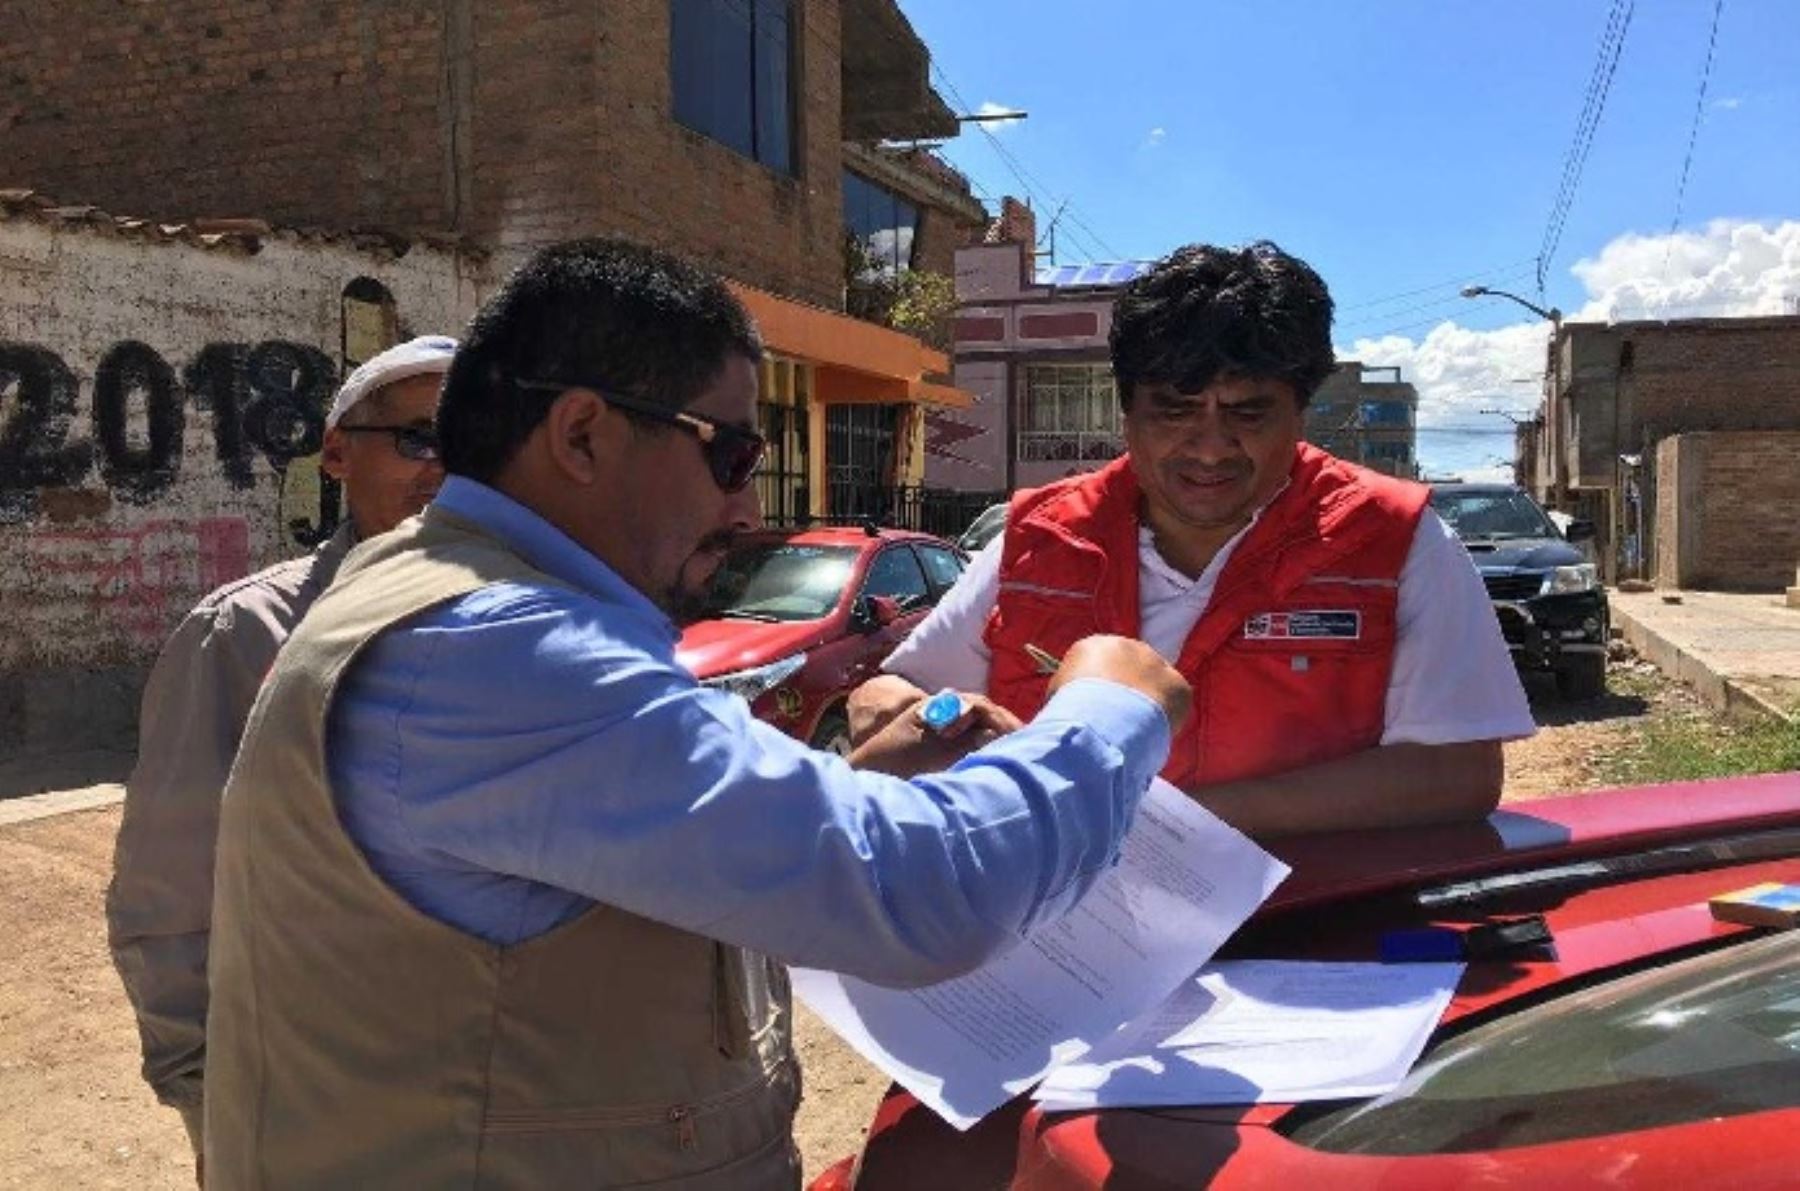 El Ministerio de Vivienda, Construcción y Saneamiento (MVCS), a través del Programa Mejoramiento Integral de Barrios (PMIB), cumple a cabalidad los compromisos asumidos con las autoridades y los más de 20,000 pobladores del asentamiento humano Justicia, Paz y Vida, del distrito El Tambo, en Huancayo, región Junín.